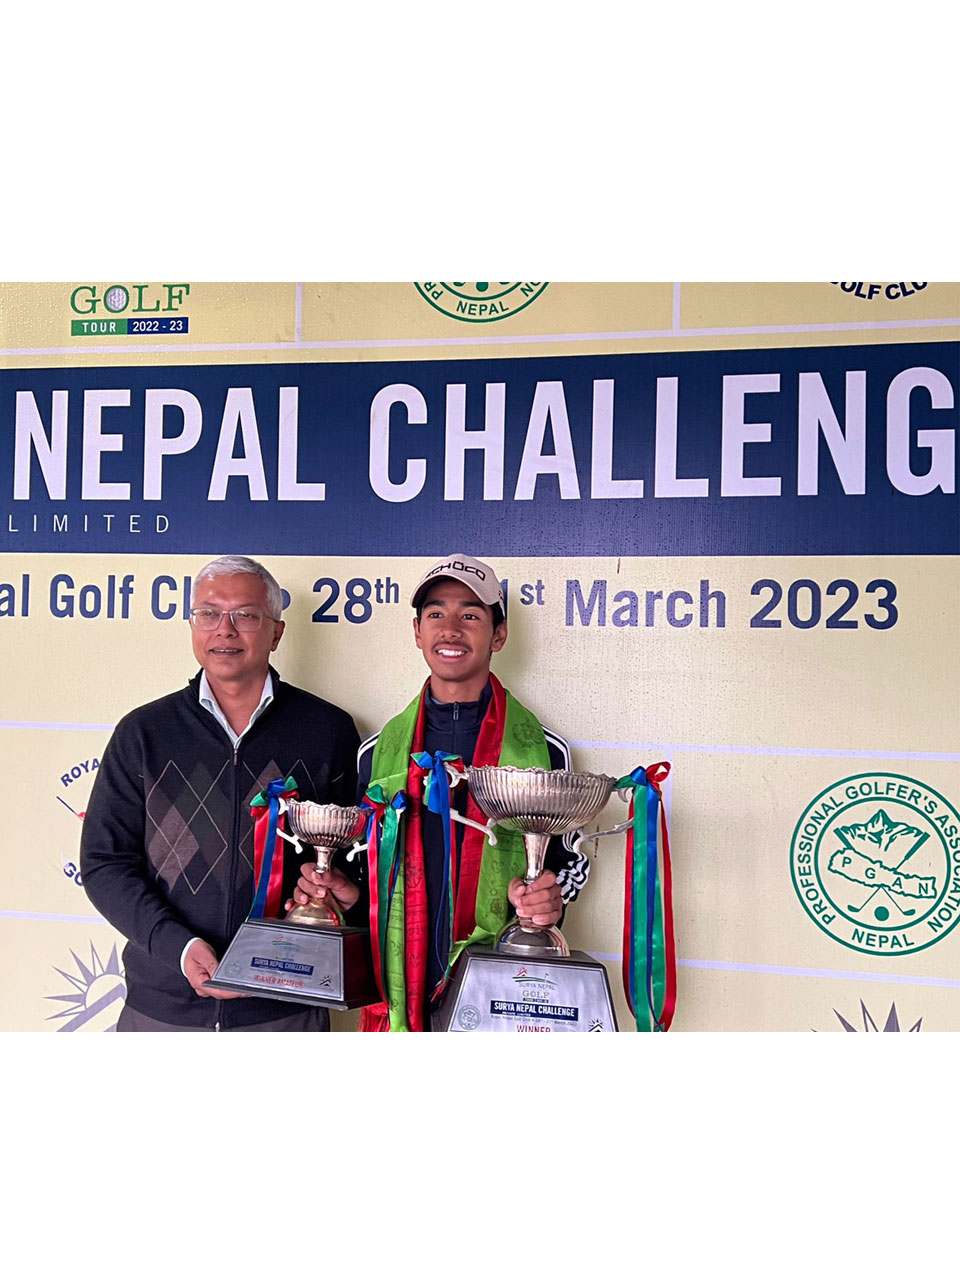 Sadbhav Acharya wins by 2 strokes at Surya Nepal Challenge